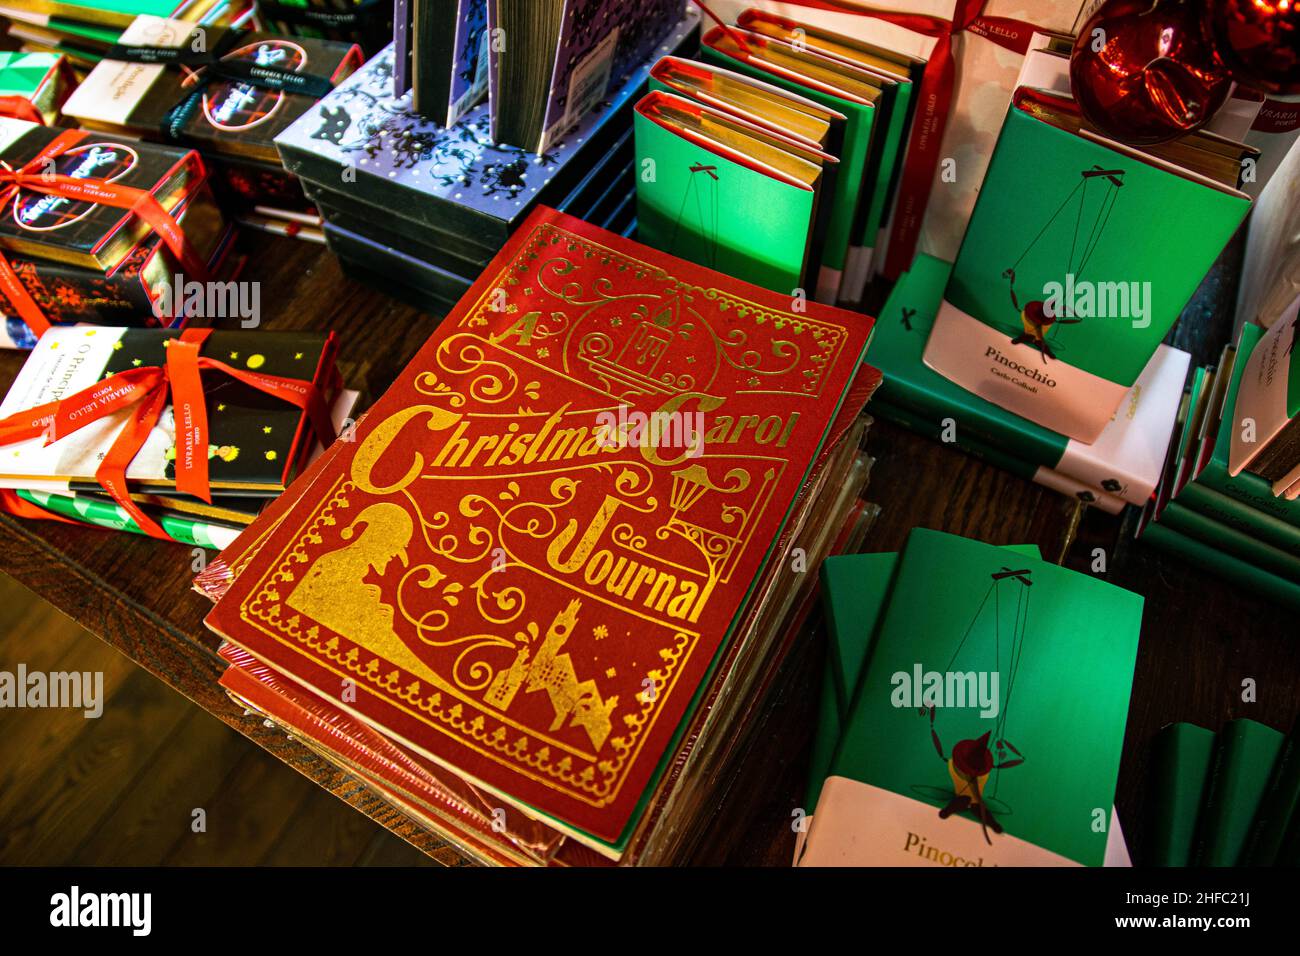 Porto, Portogallo - 18 Nov 2020: Prima copertina di un Carol Journal di Natale, basato sul famoso libro Charles Dickens. Idee regalo di Natale all'interno del negozio di libri Foto Stock